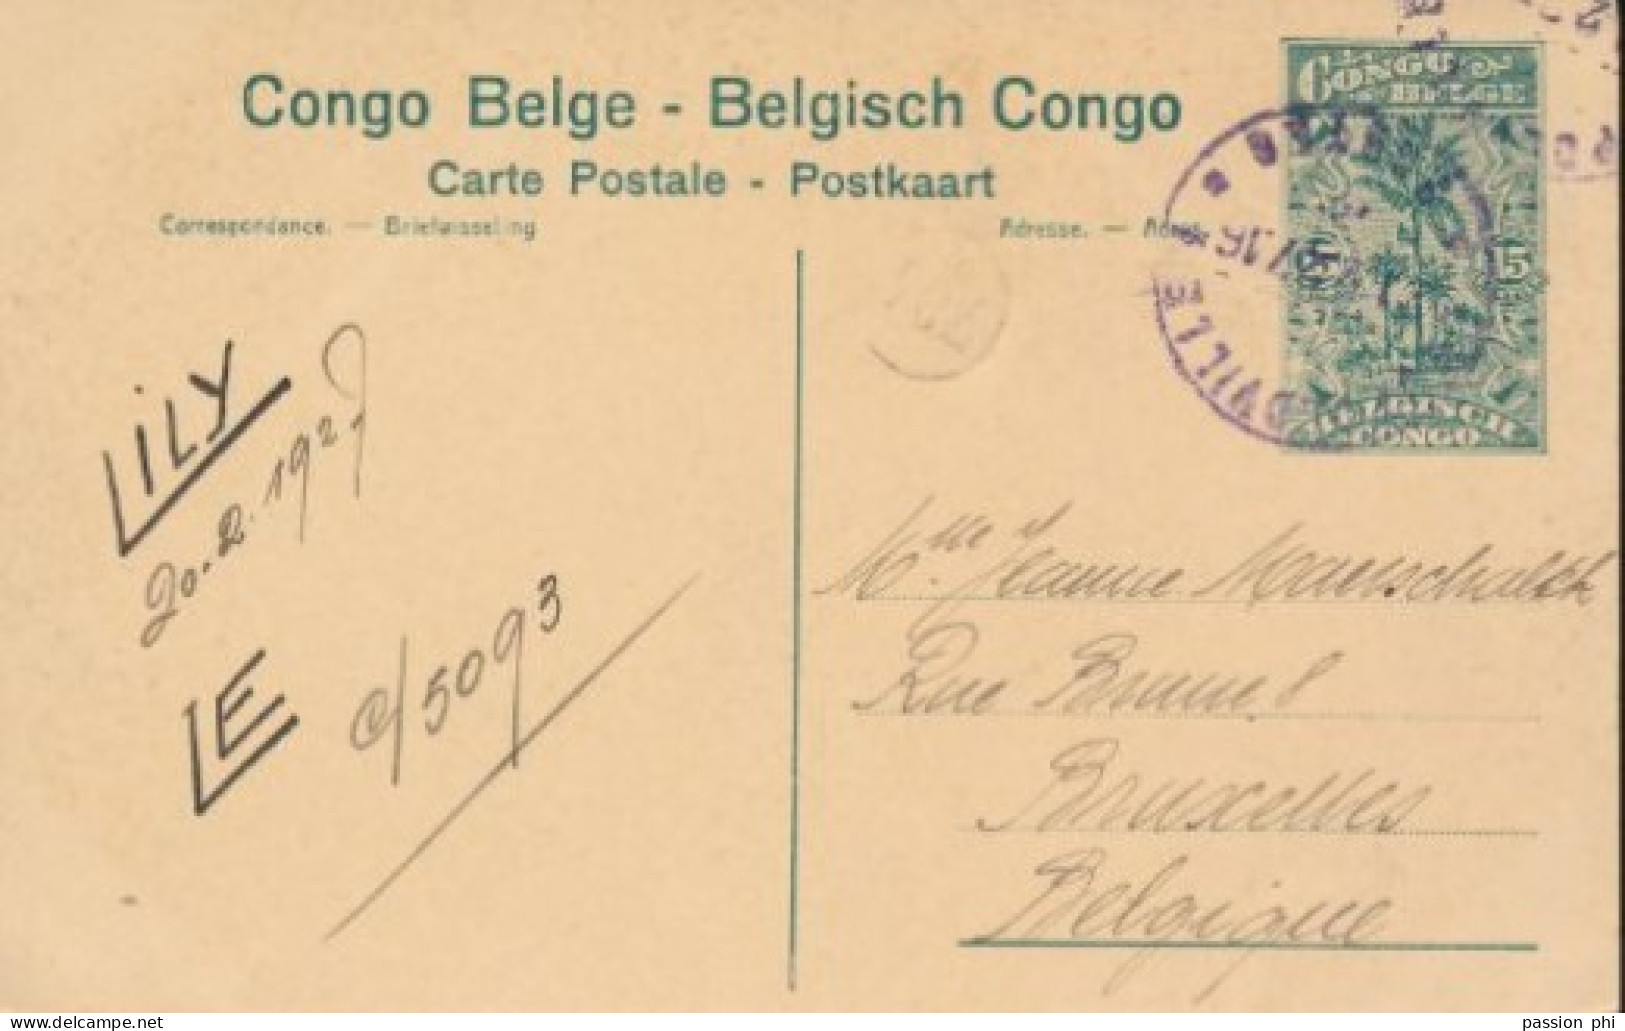 BELGIAN CONGO PPS SBEP 61 VIEW 104 USED - Ganzsachen